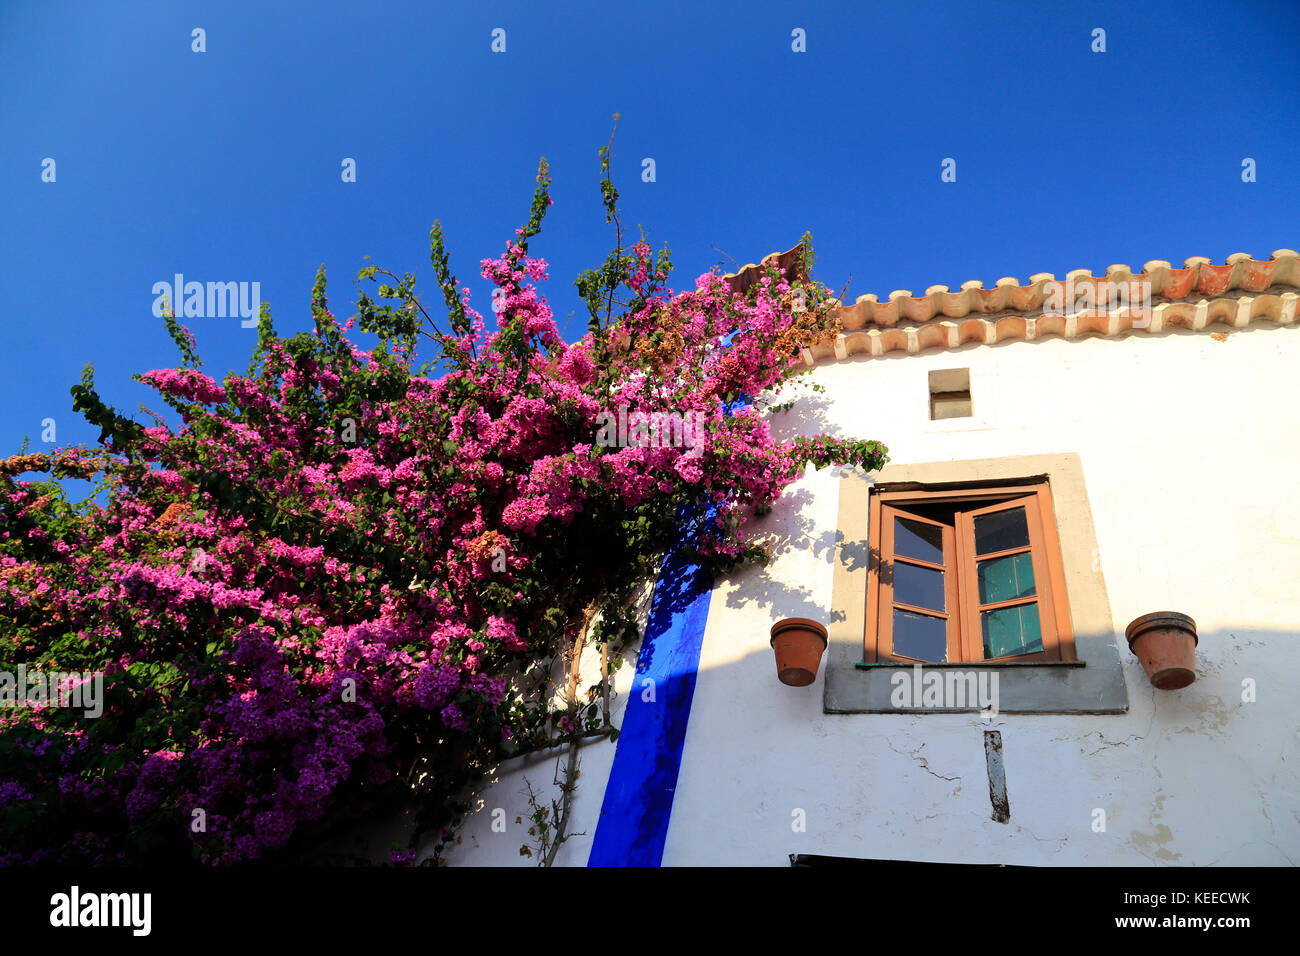 Tief helle rosafarbene Bougainvillea Portugiesischen gegen eine weiße Wand mit gelben Fensterrahmen und Blau umrandete unter pan Ziegeldach und einem intensiven blauen Himmel. Stockfoto